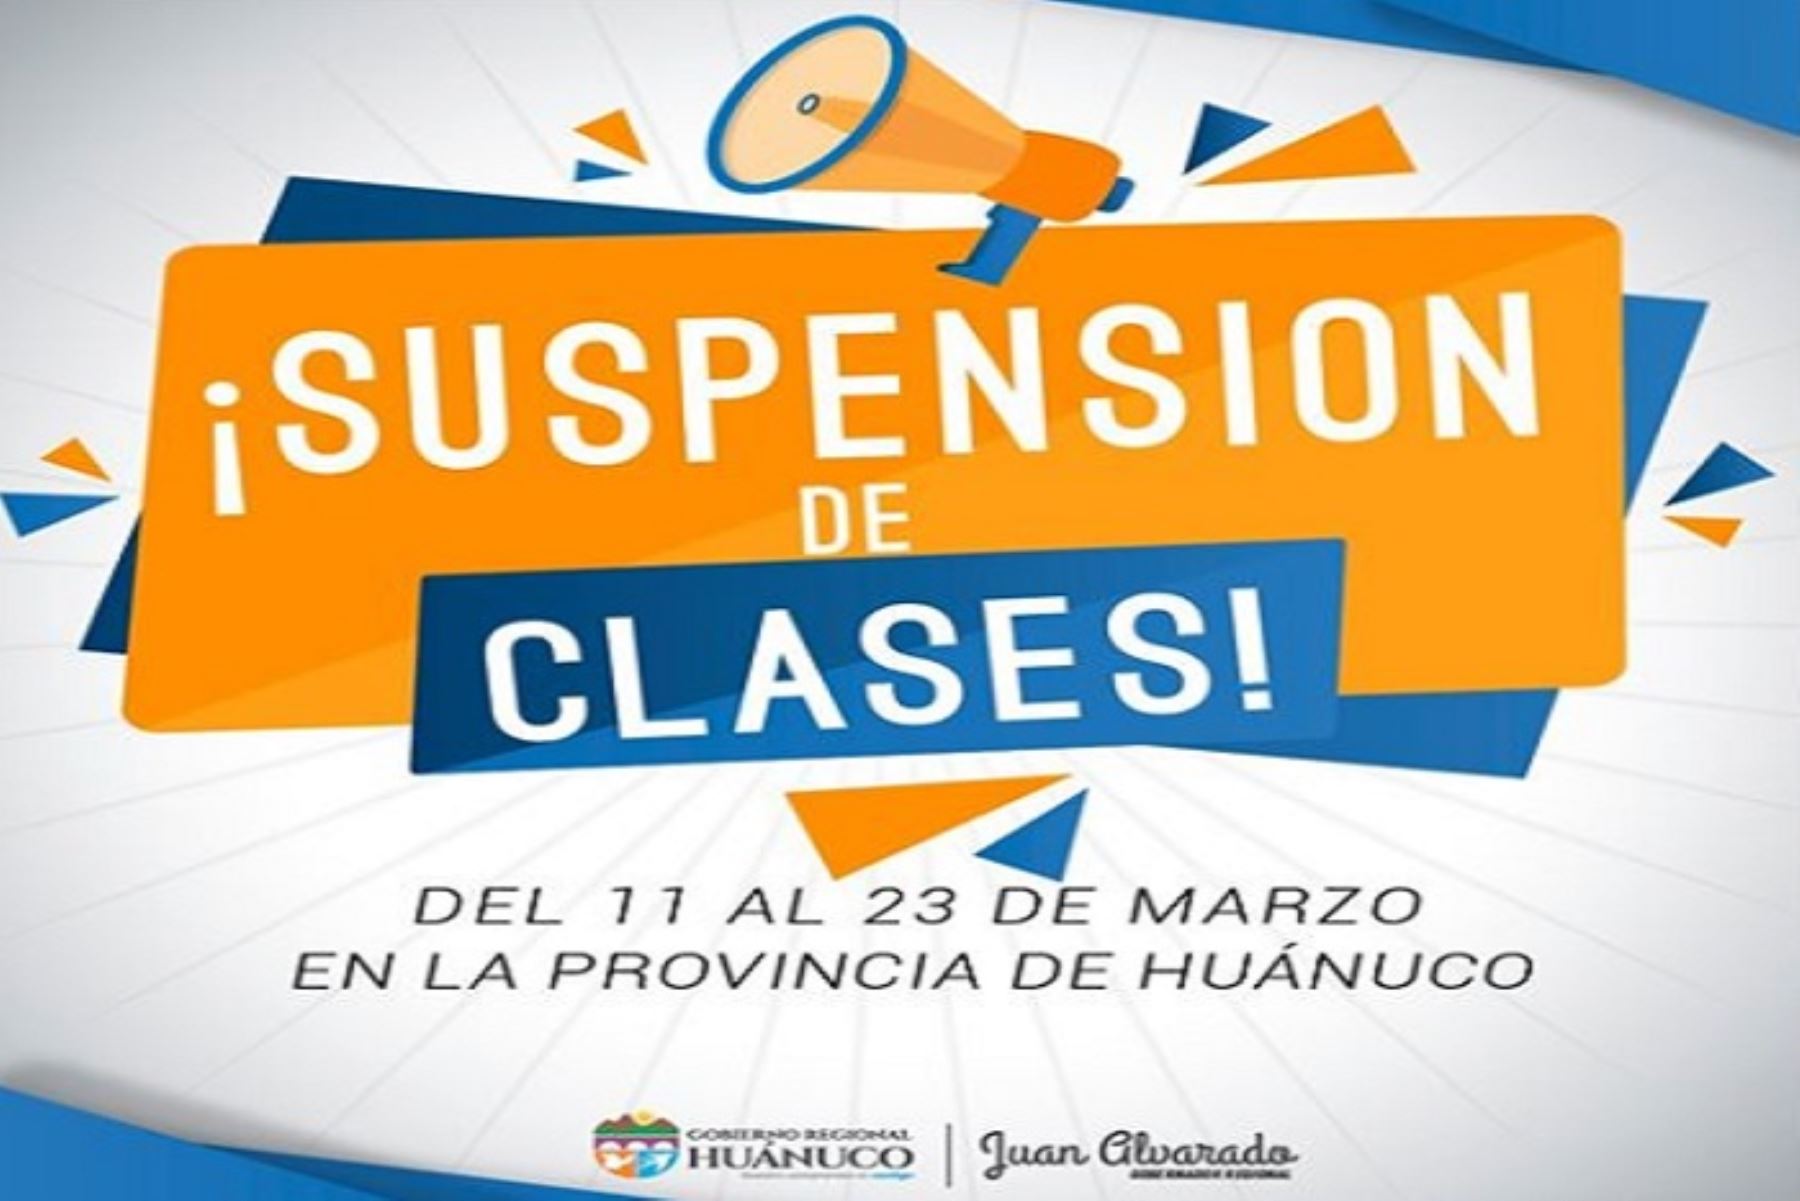 Desde hoy hasta el lunes 23 de marzo fueron suspendidas las clases escolares en la provincia de Huánuco.